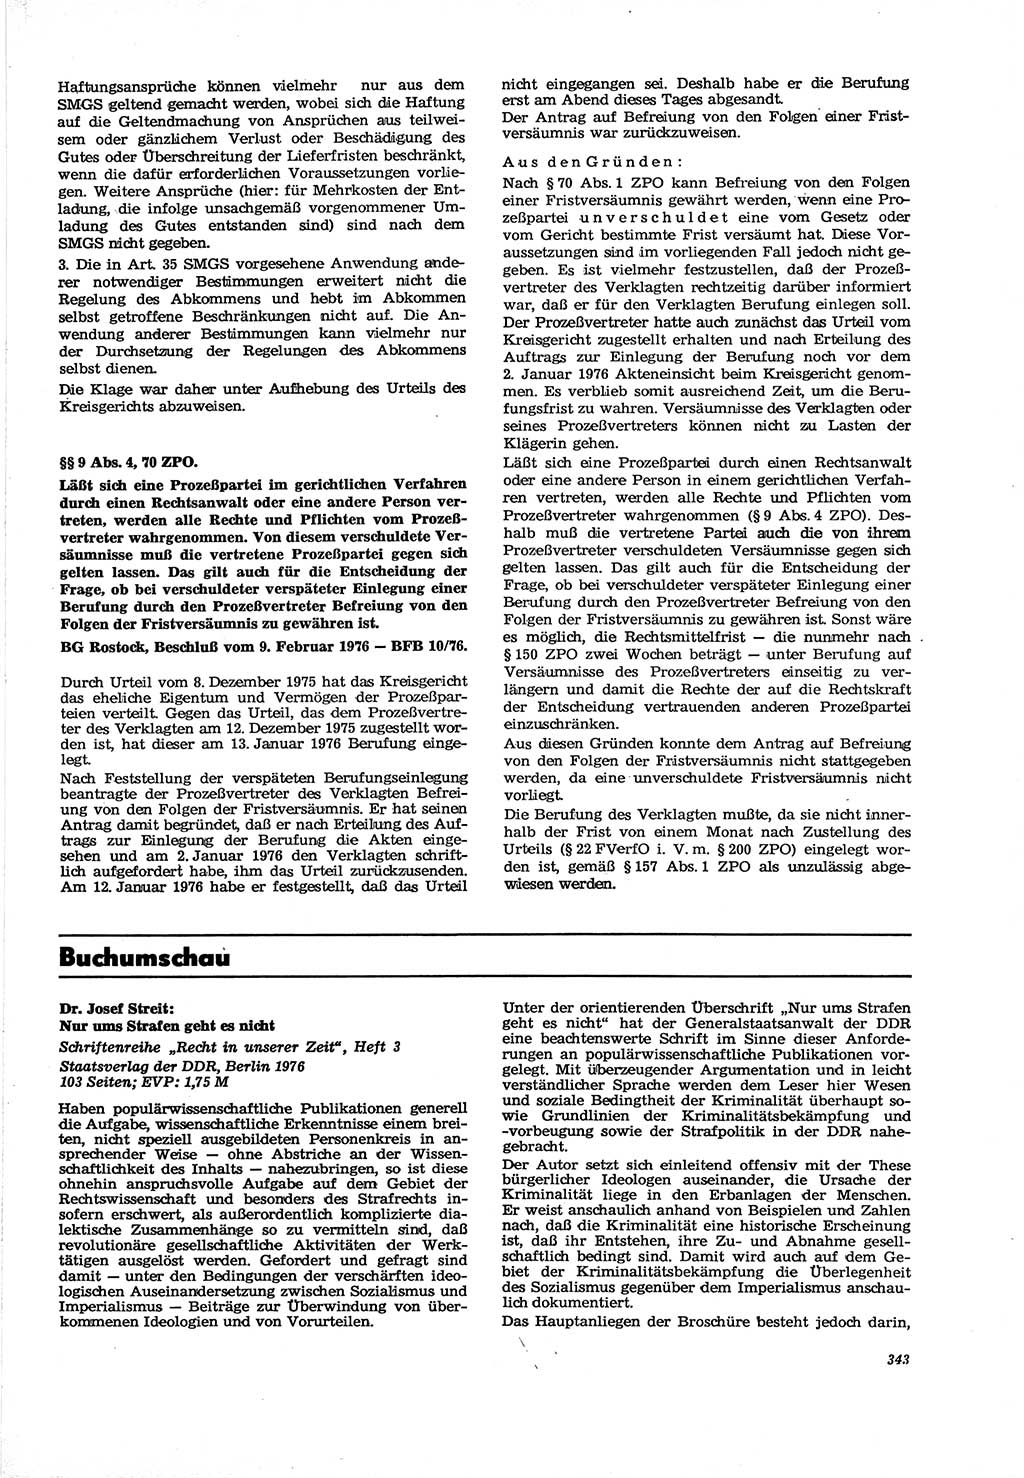 Neue Justiz (NJ), Zeitschrift für Recht und Rechtswissenschaft [Deutsche Demokratische Republik (DDR)], 30. Jahrgang 1976, Seite 343 (NJ DDR 1976, S. 343)